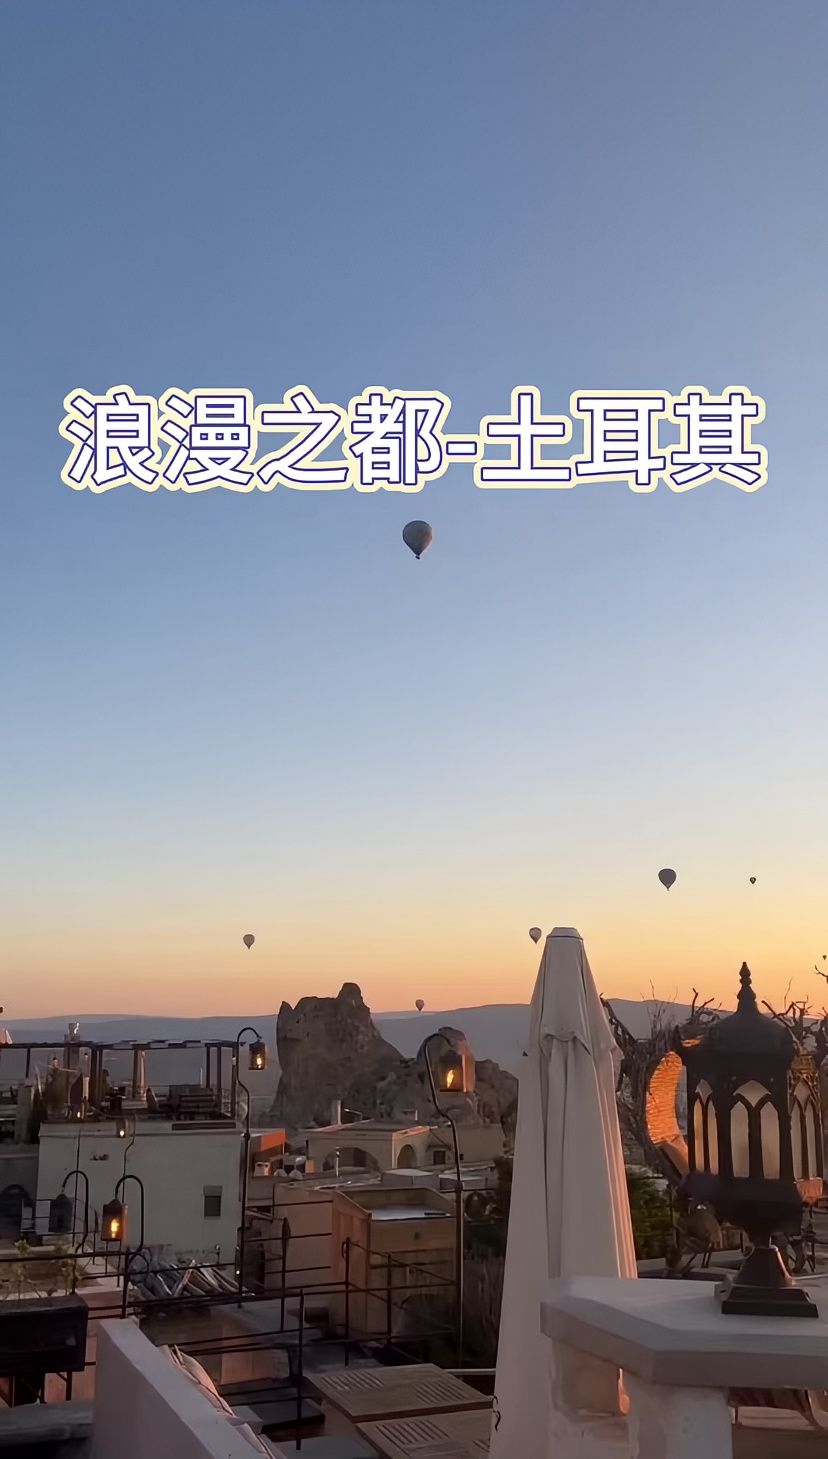 来一次浪漫的热气球之旅吧